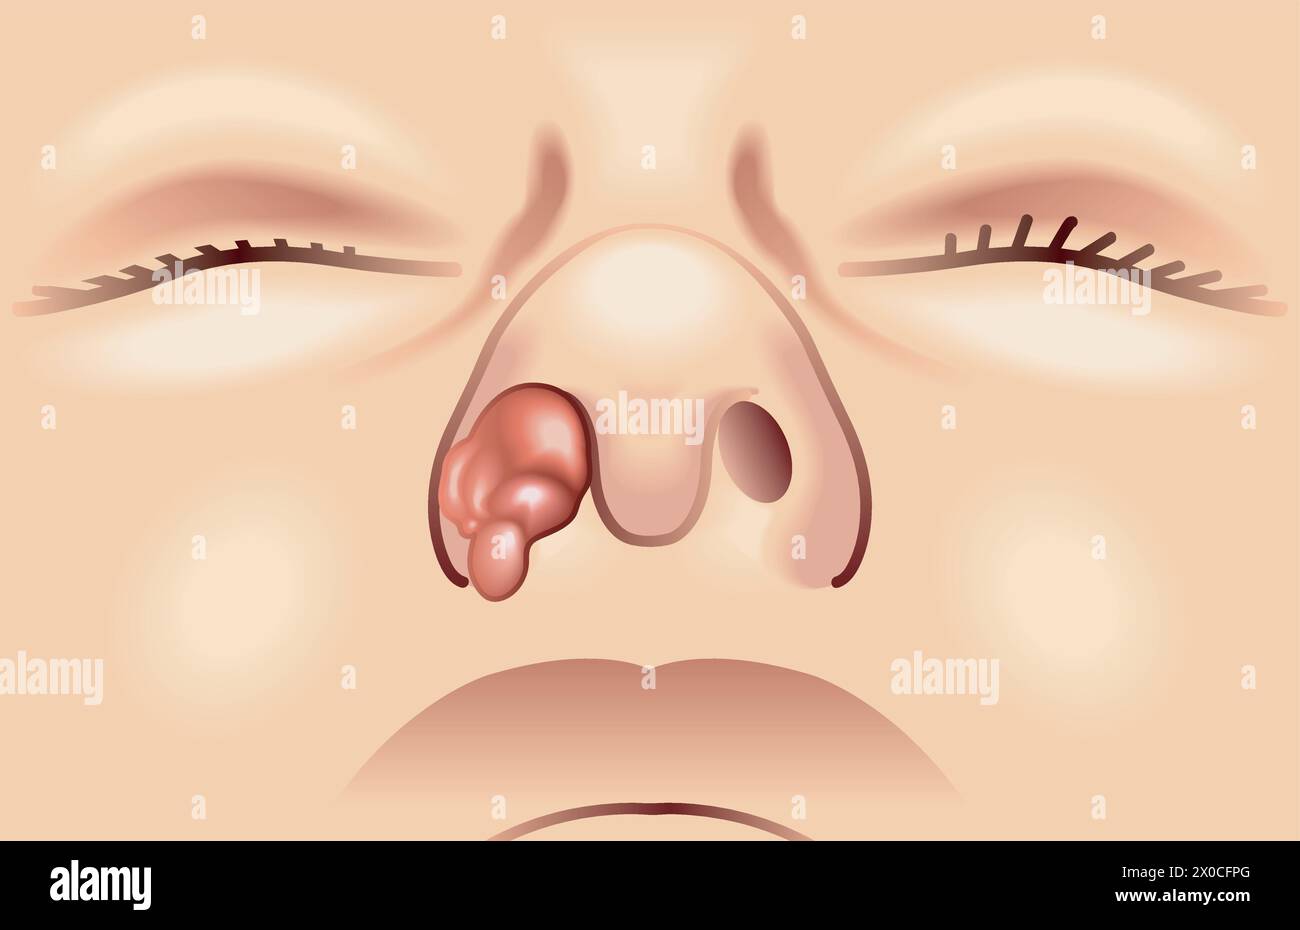 Illustrazione medica di un tumore nasale Illustrazione Vettoriale